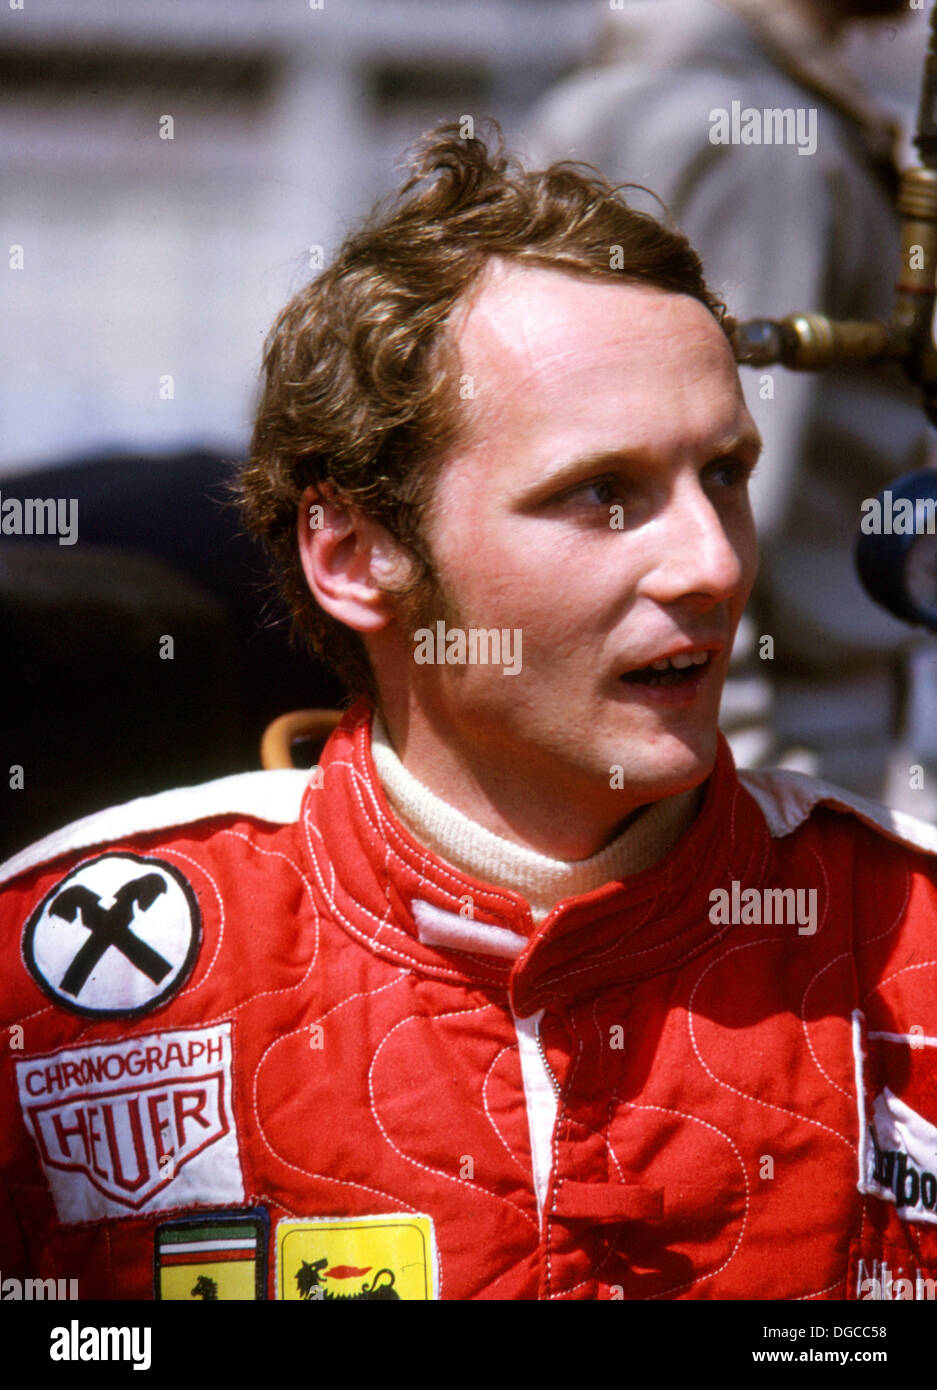 Niki Lauda, pilote automobile autrichien qui a remporté le Championnat du Monde de Formule 1 3 fois en 1975, 1977 et 1984. Photographié en 1975. Banque D'Images